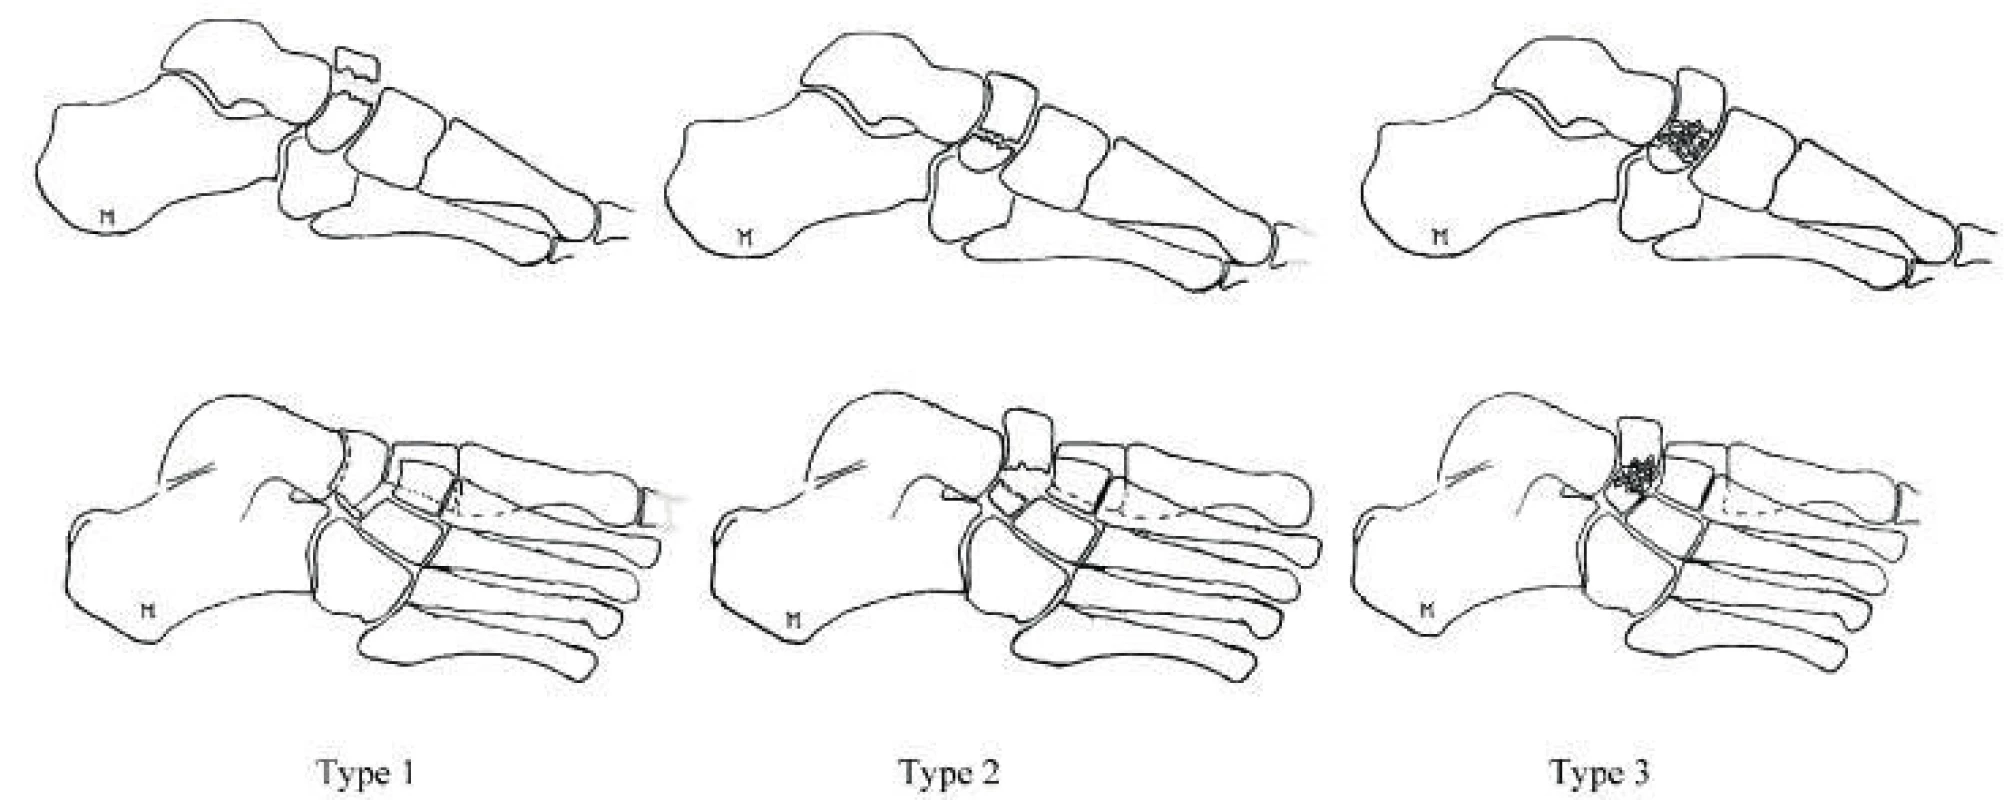 DeLee’s Navicular Bone Fractures (Source. Moore Derek. Tarsal
navicular Fractures: https://www.orthobullets.com/foot-and-ankle/7033/
tarsal-navicular-fractures)